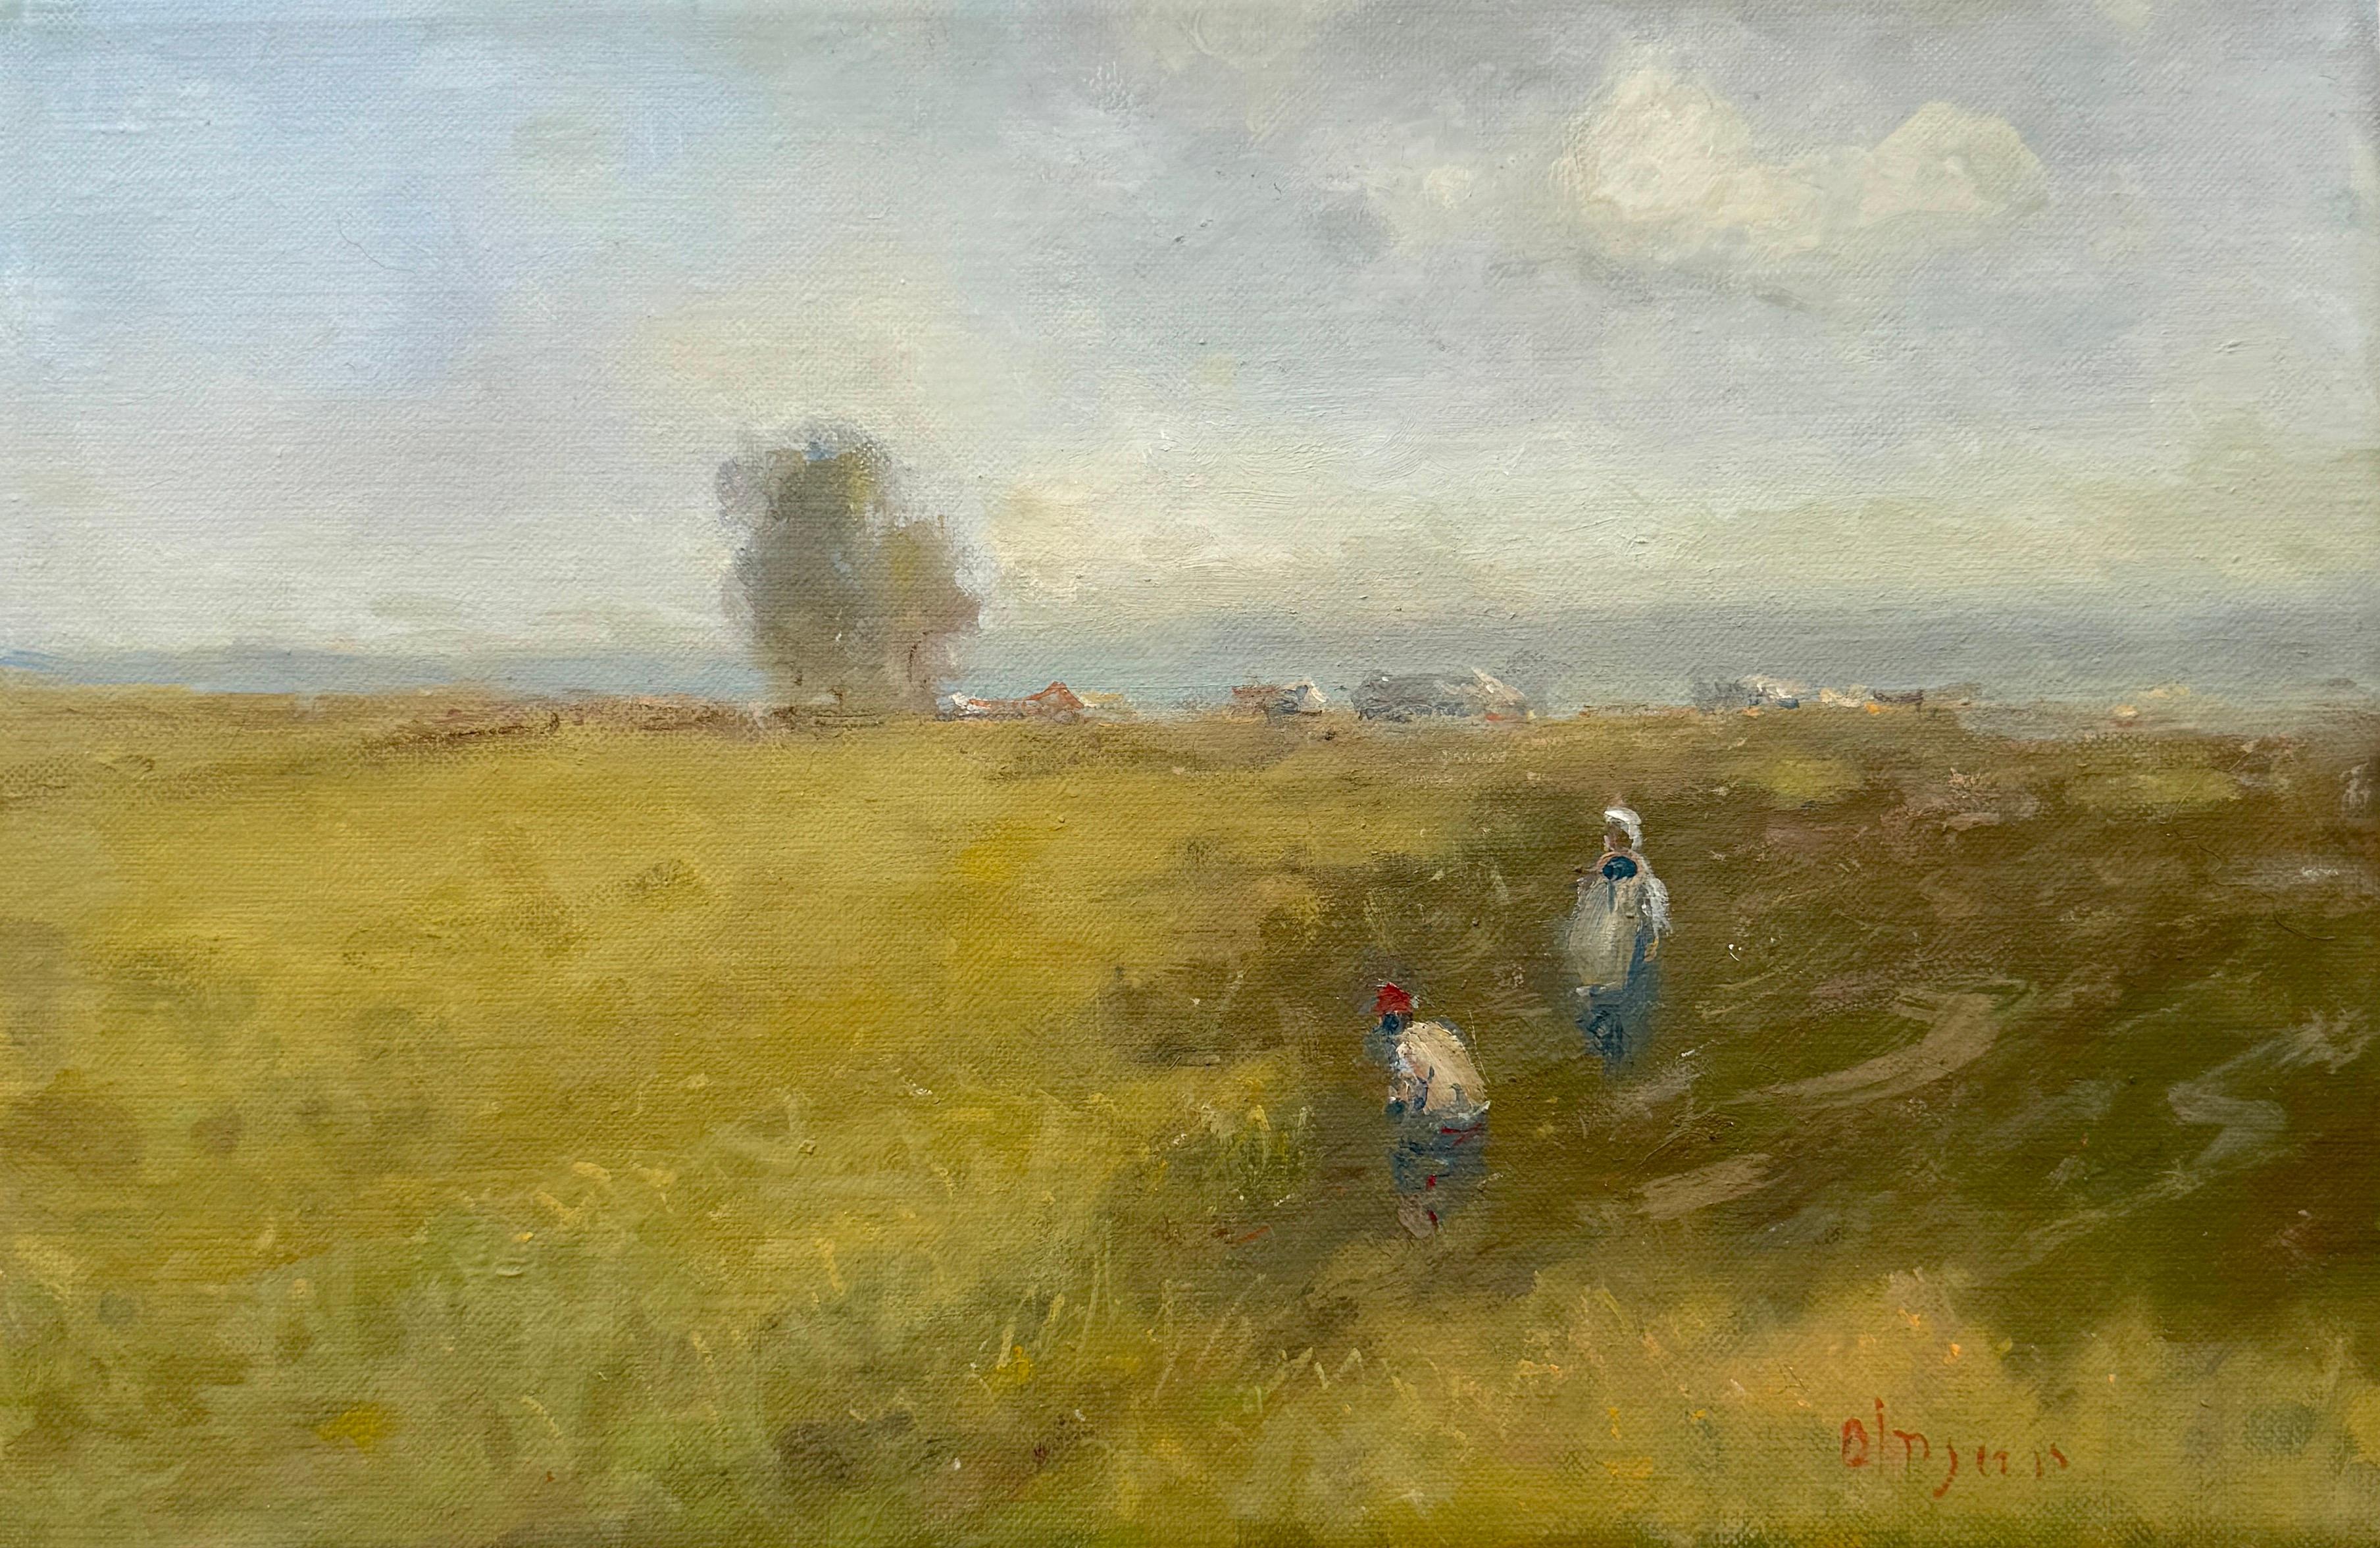 Landscape Painting Karen Darbinyan - Valley d'été, peinture à l'huile impressionniste originale, unique en son genre